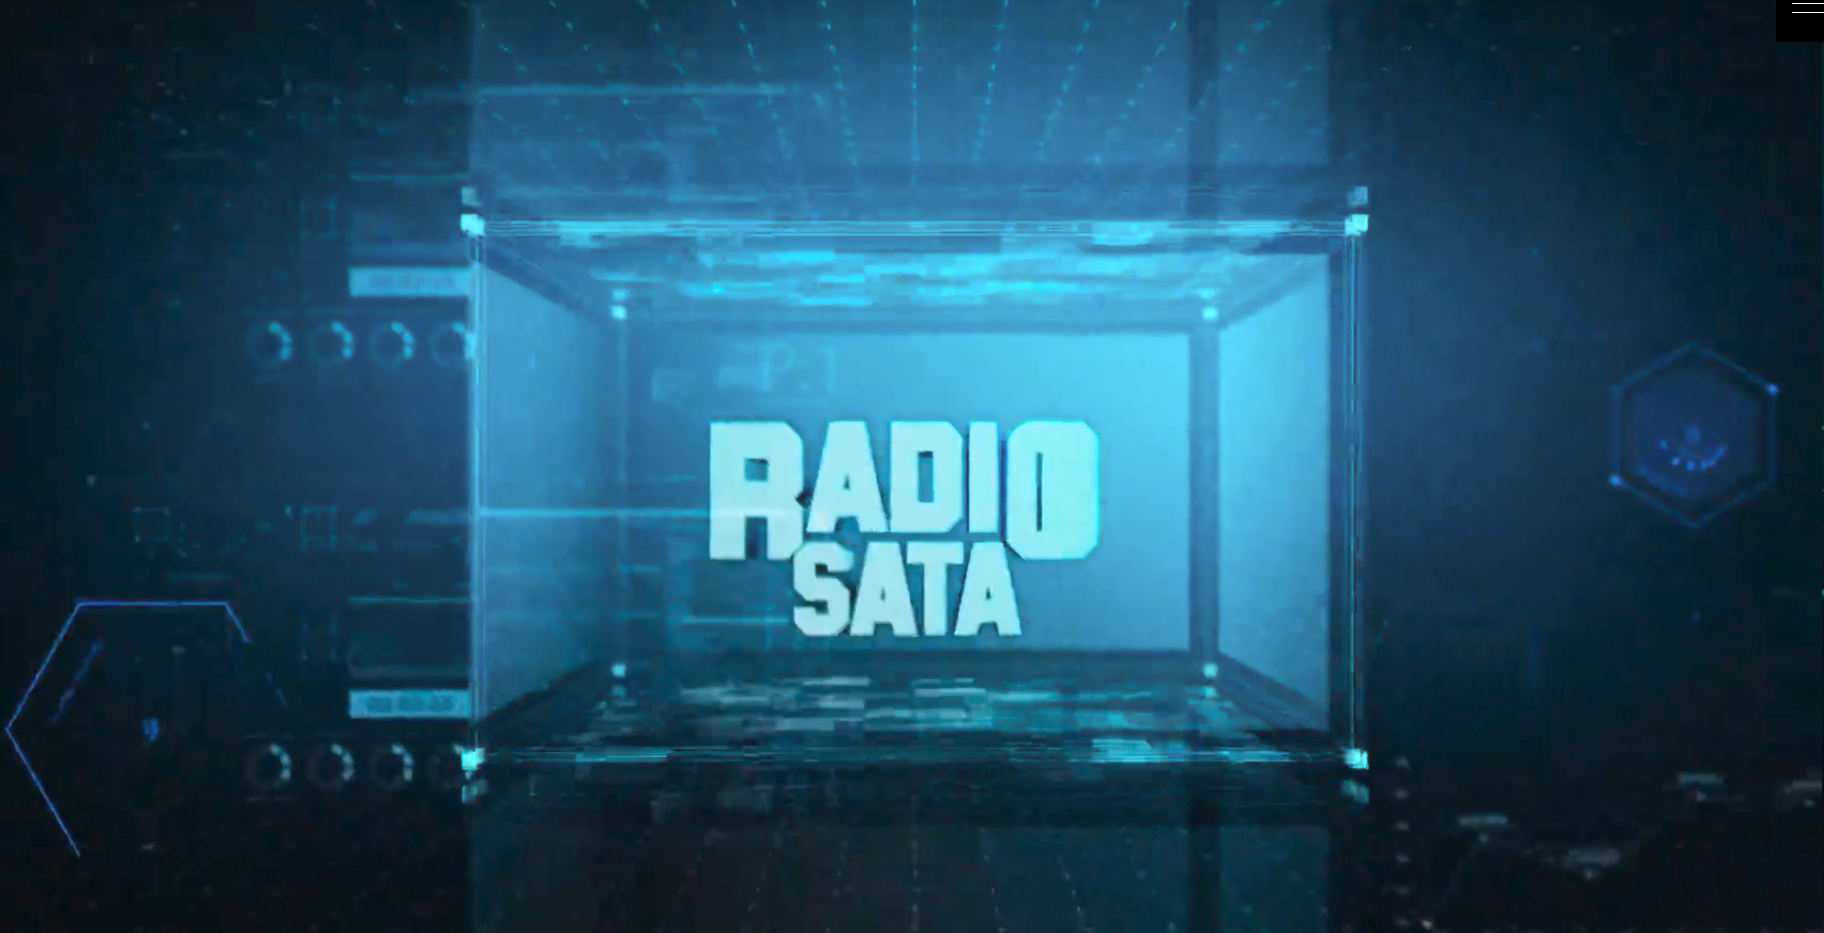 (c) Radiosata.net